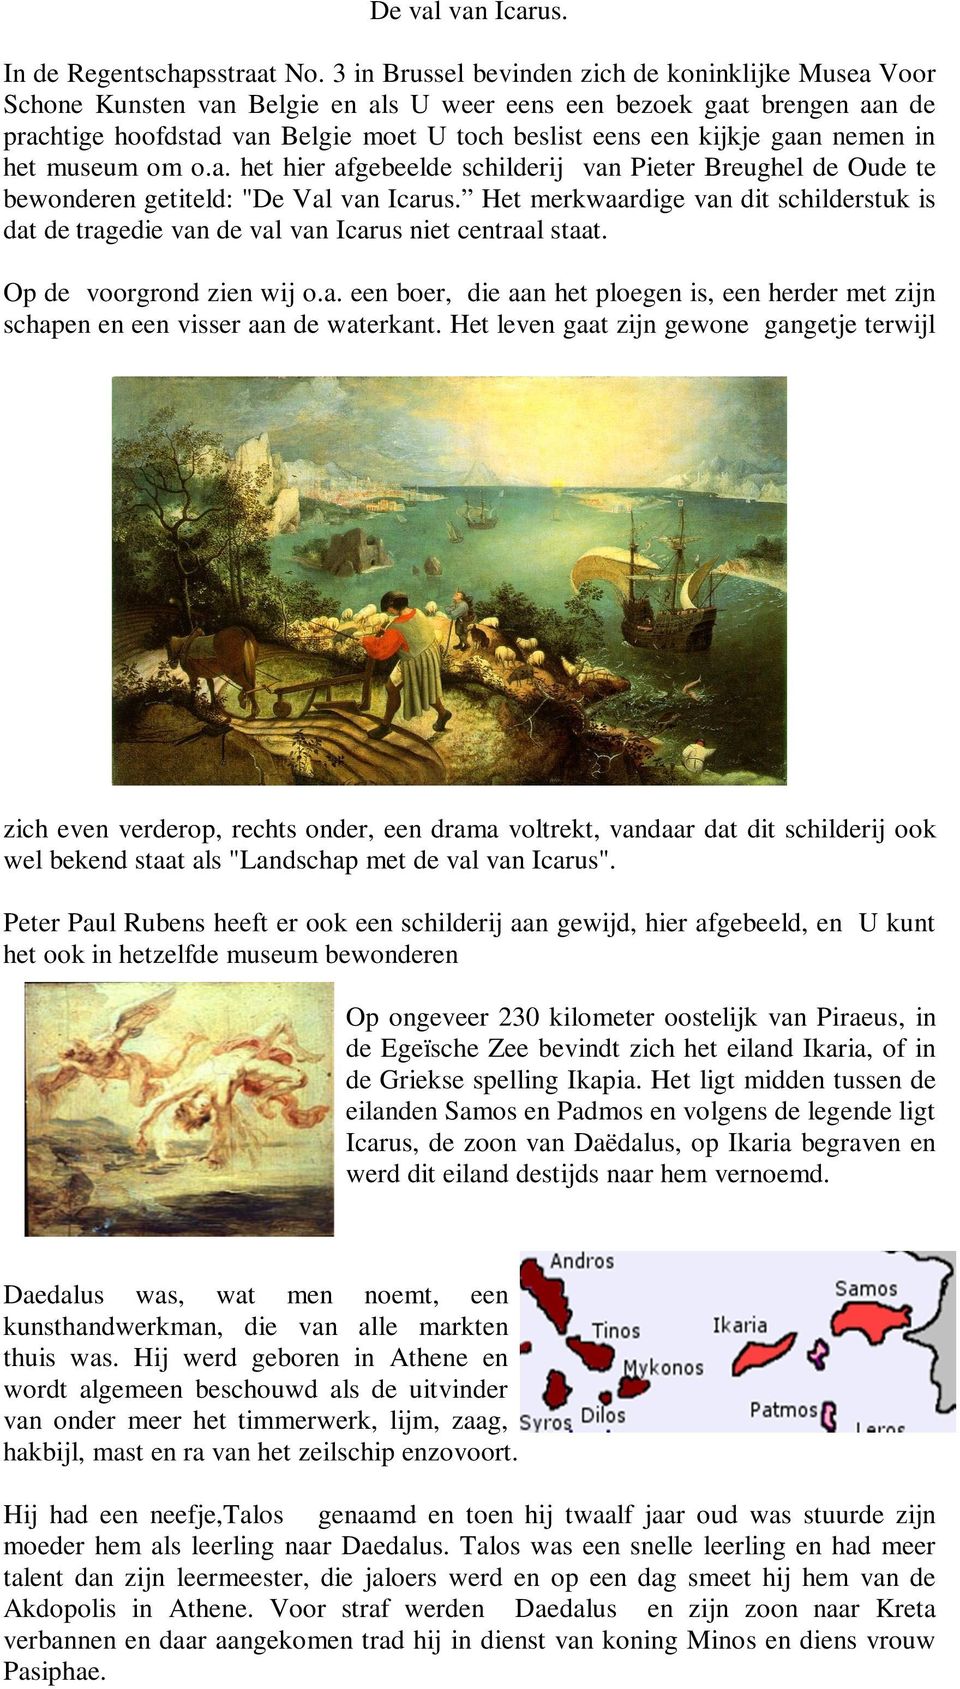 gaan nemen in het museum om o.a. het hier afgebeelde schilderij van Pieter Breughel de Oude te bewonderen getiteld: "De Val van Icarus.